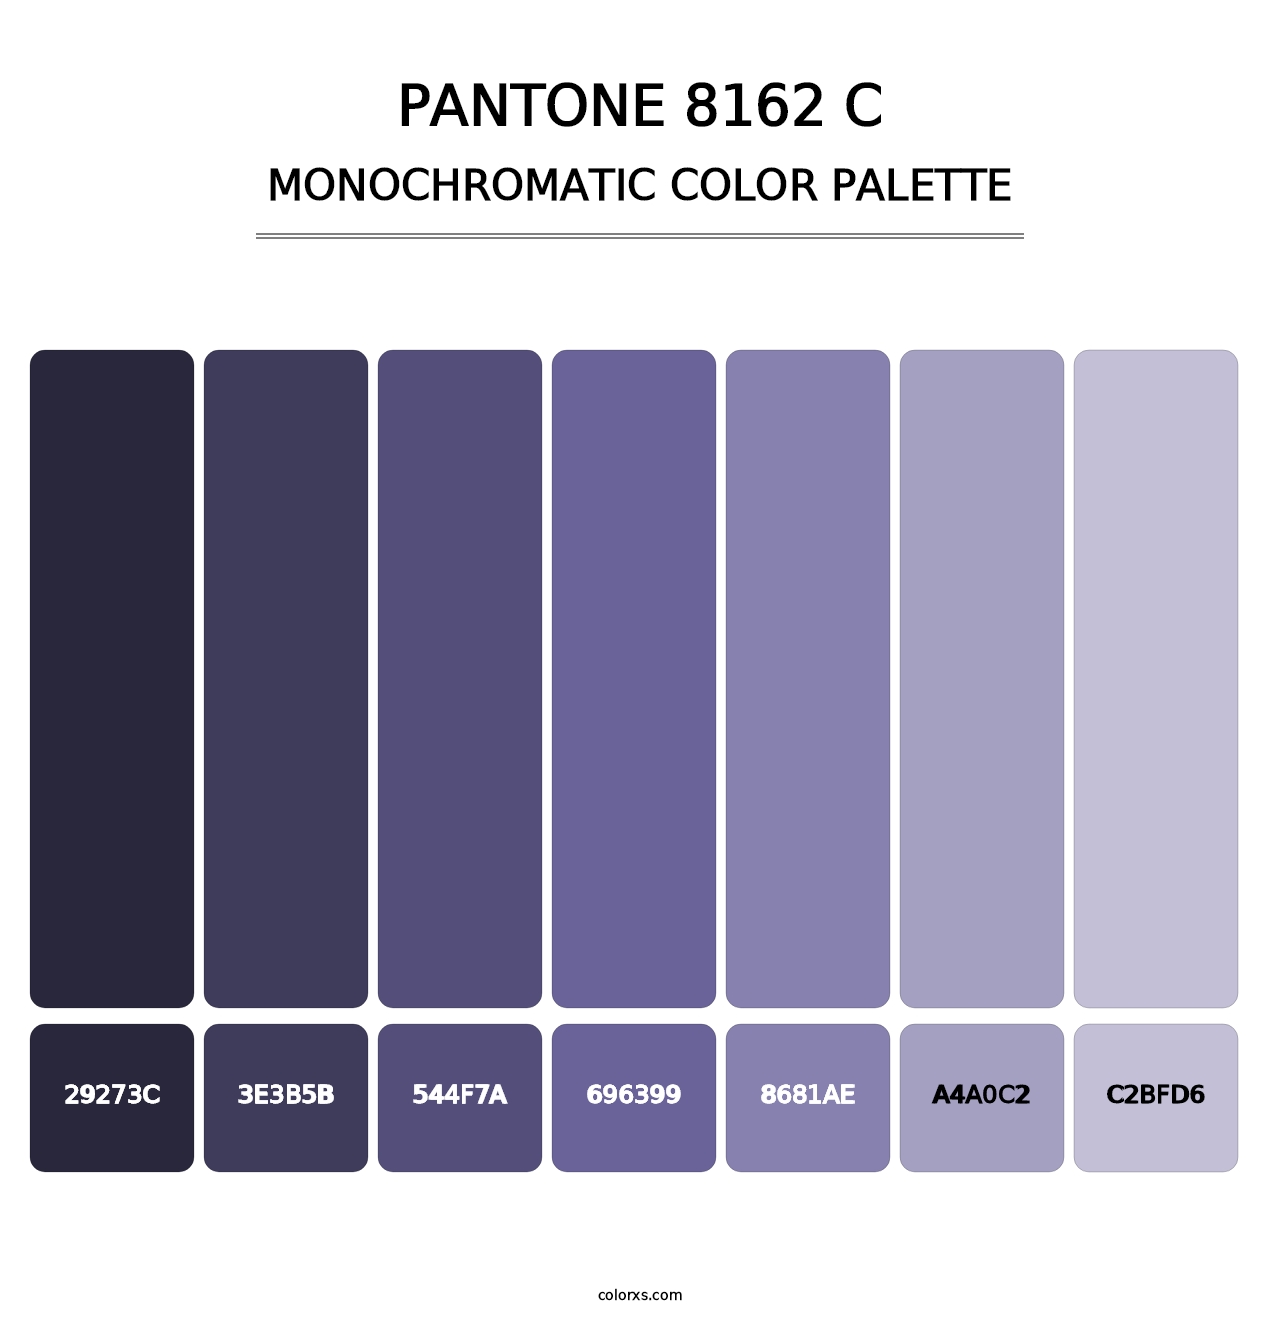 PANTONE 8162 C - Monochromatic Color Palette